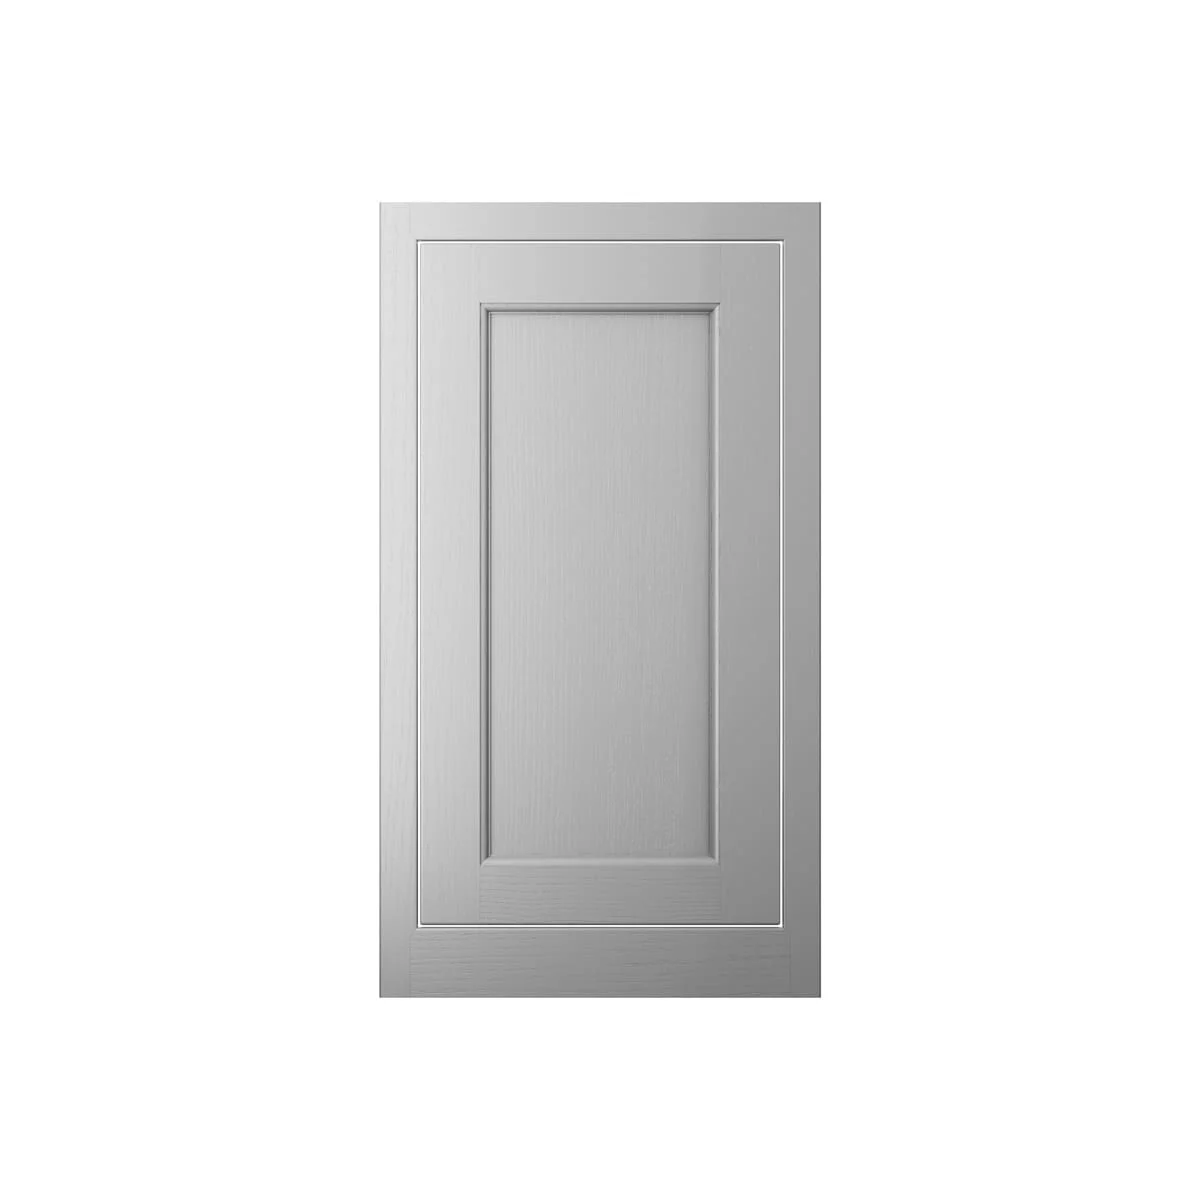 Standard Door